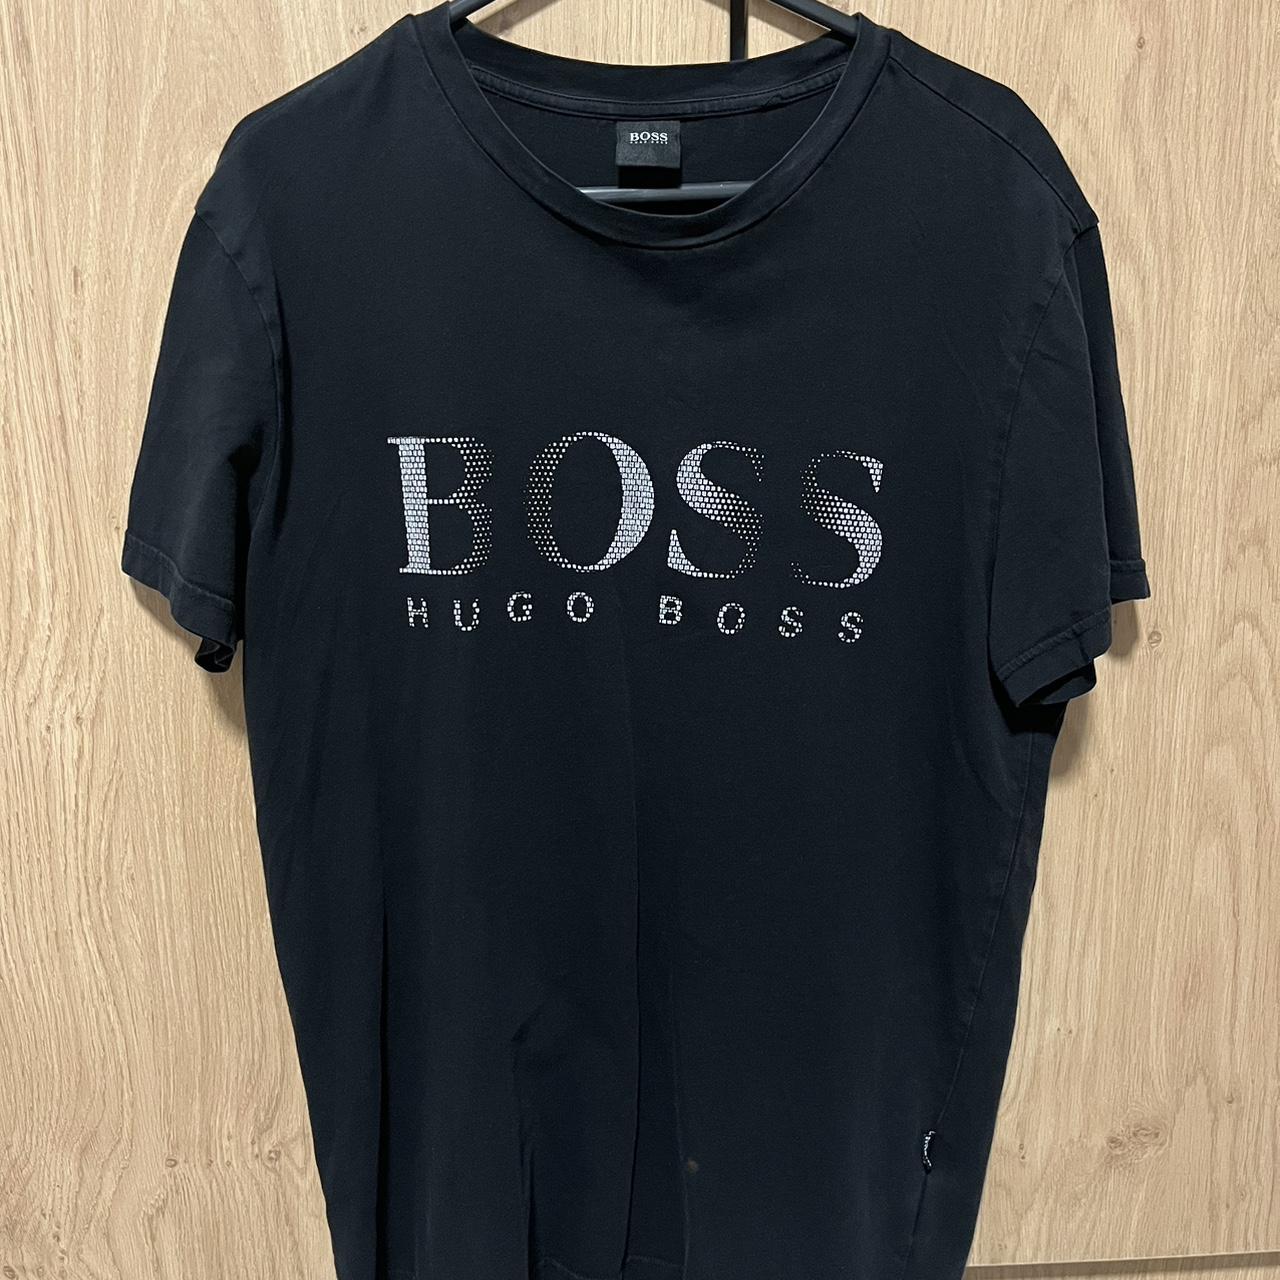 Hugo Boss T-Shirt - Classic Elegance, Modern... - Depop